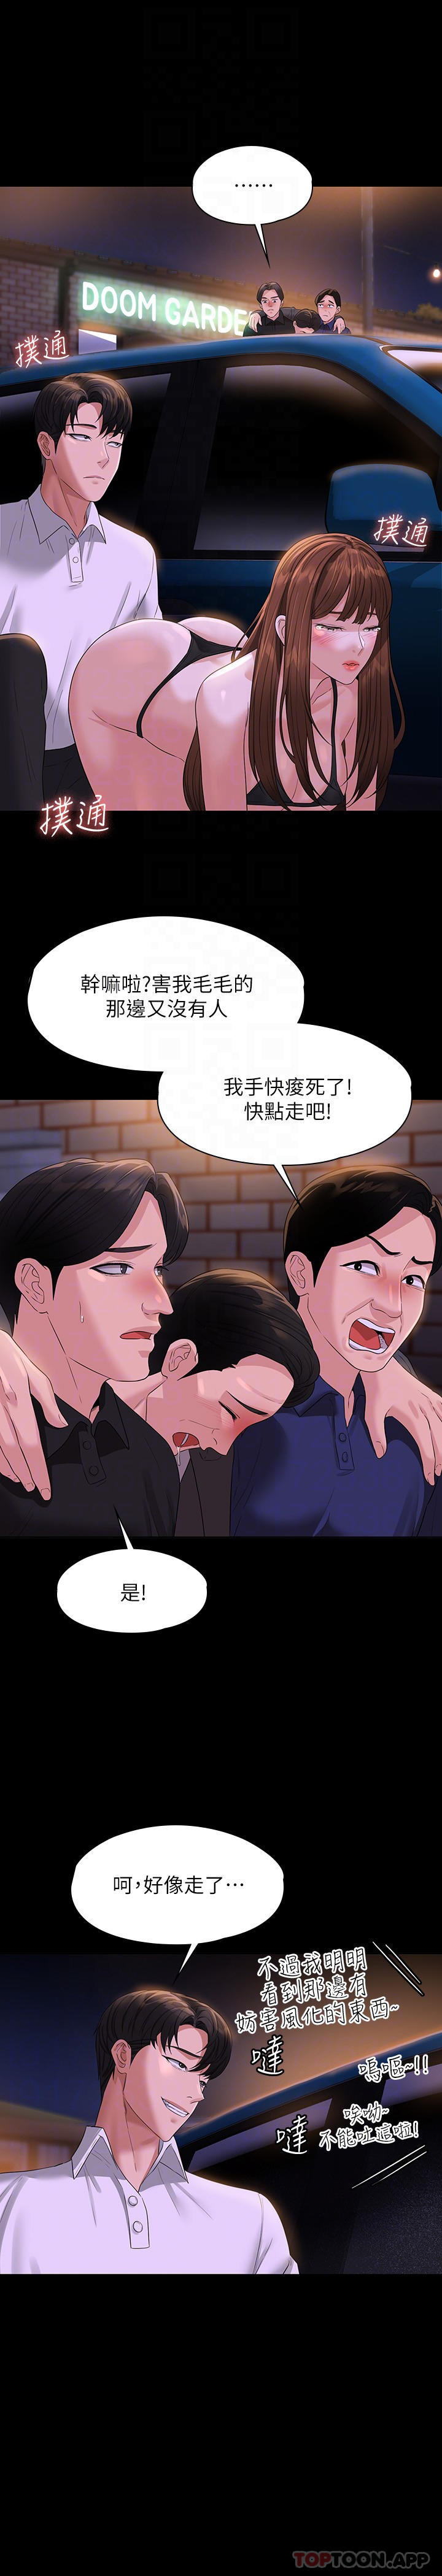 韩国污漫画 超級公務員 第45话 露天停车场的禁忌游戏 14